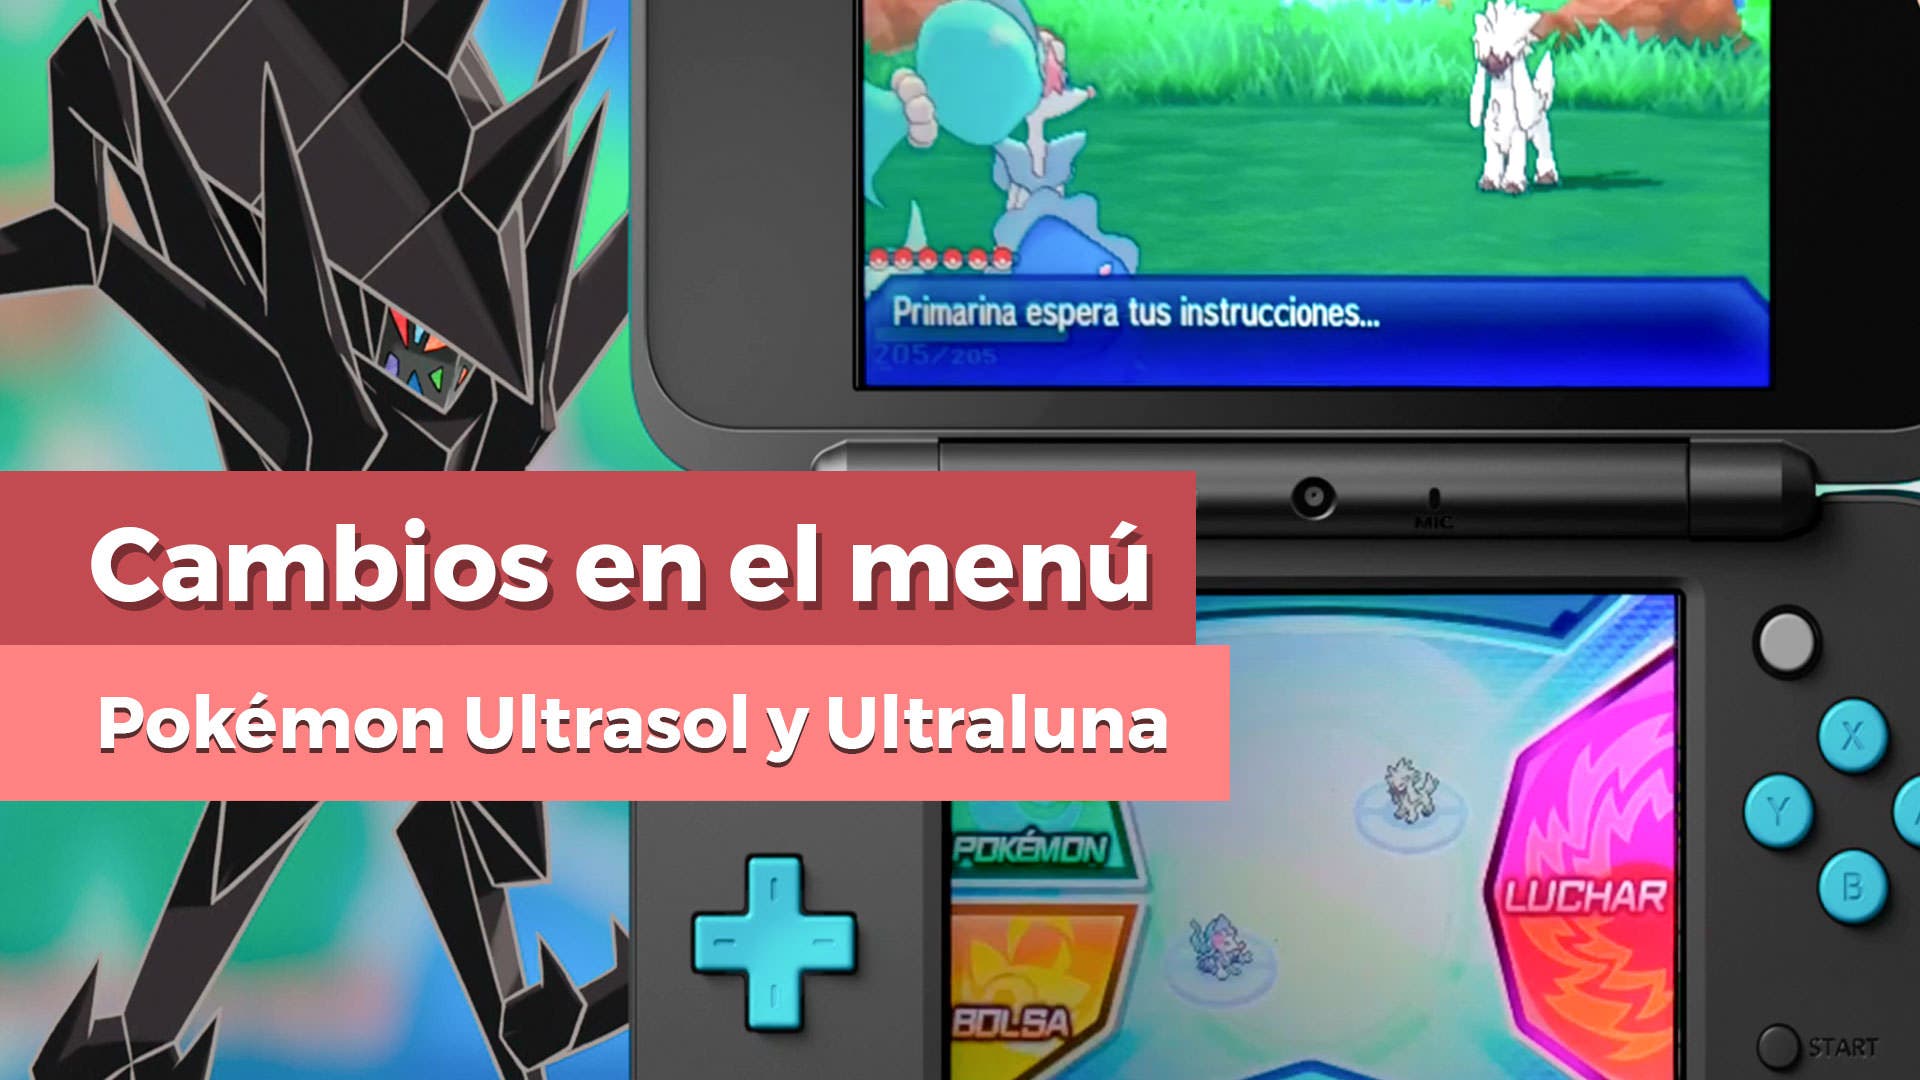 [Vídeo] Surfeamos con Mantine y novedades en la interfaz de Pokémon Ultrasol y Ultraluna